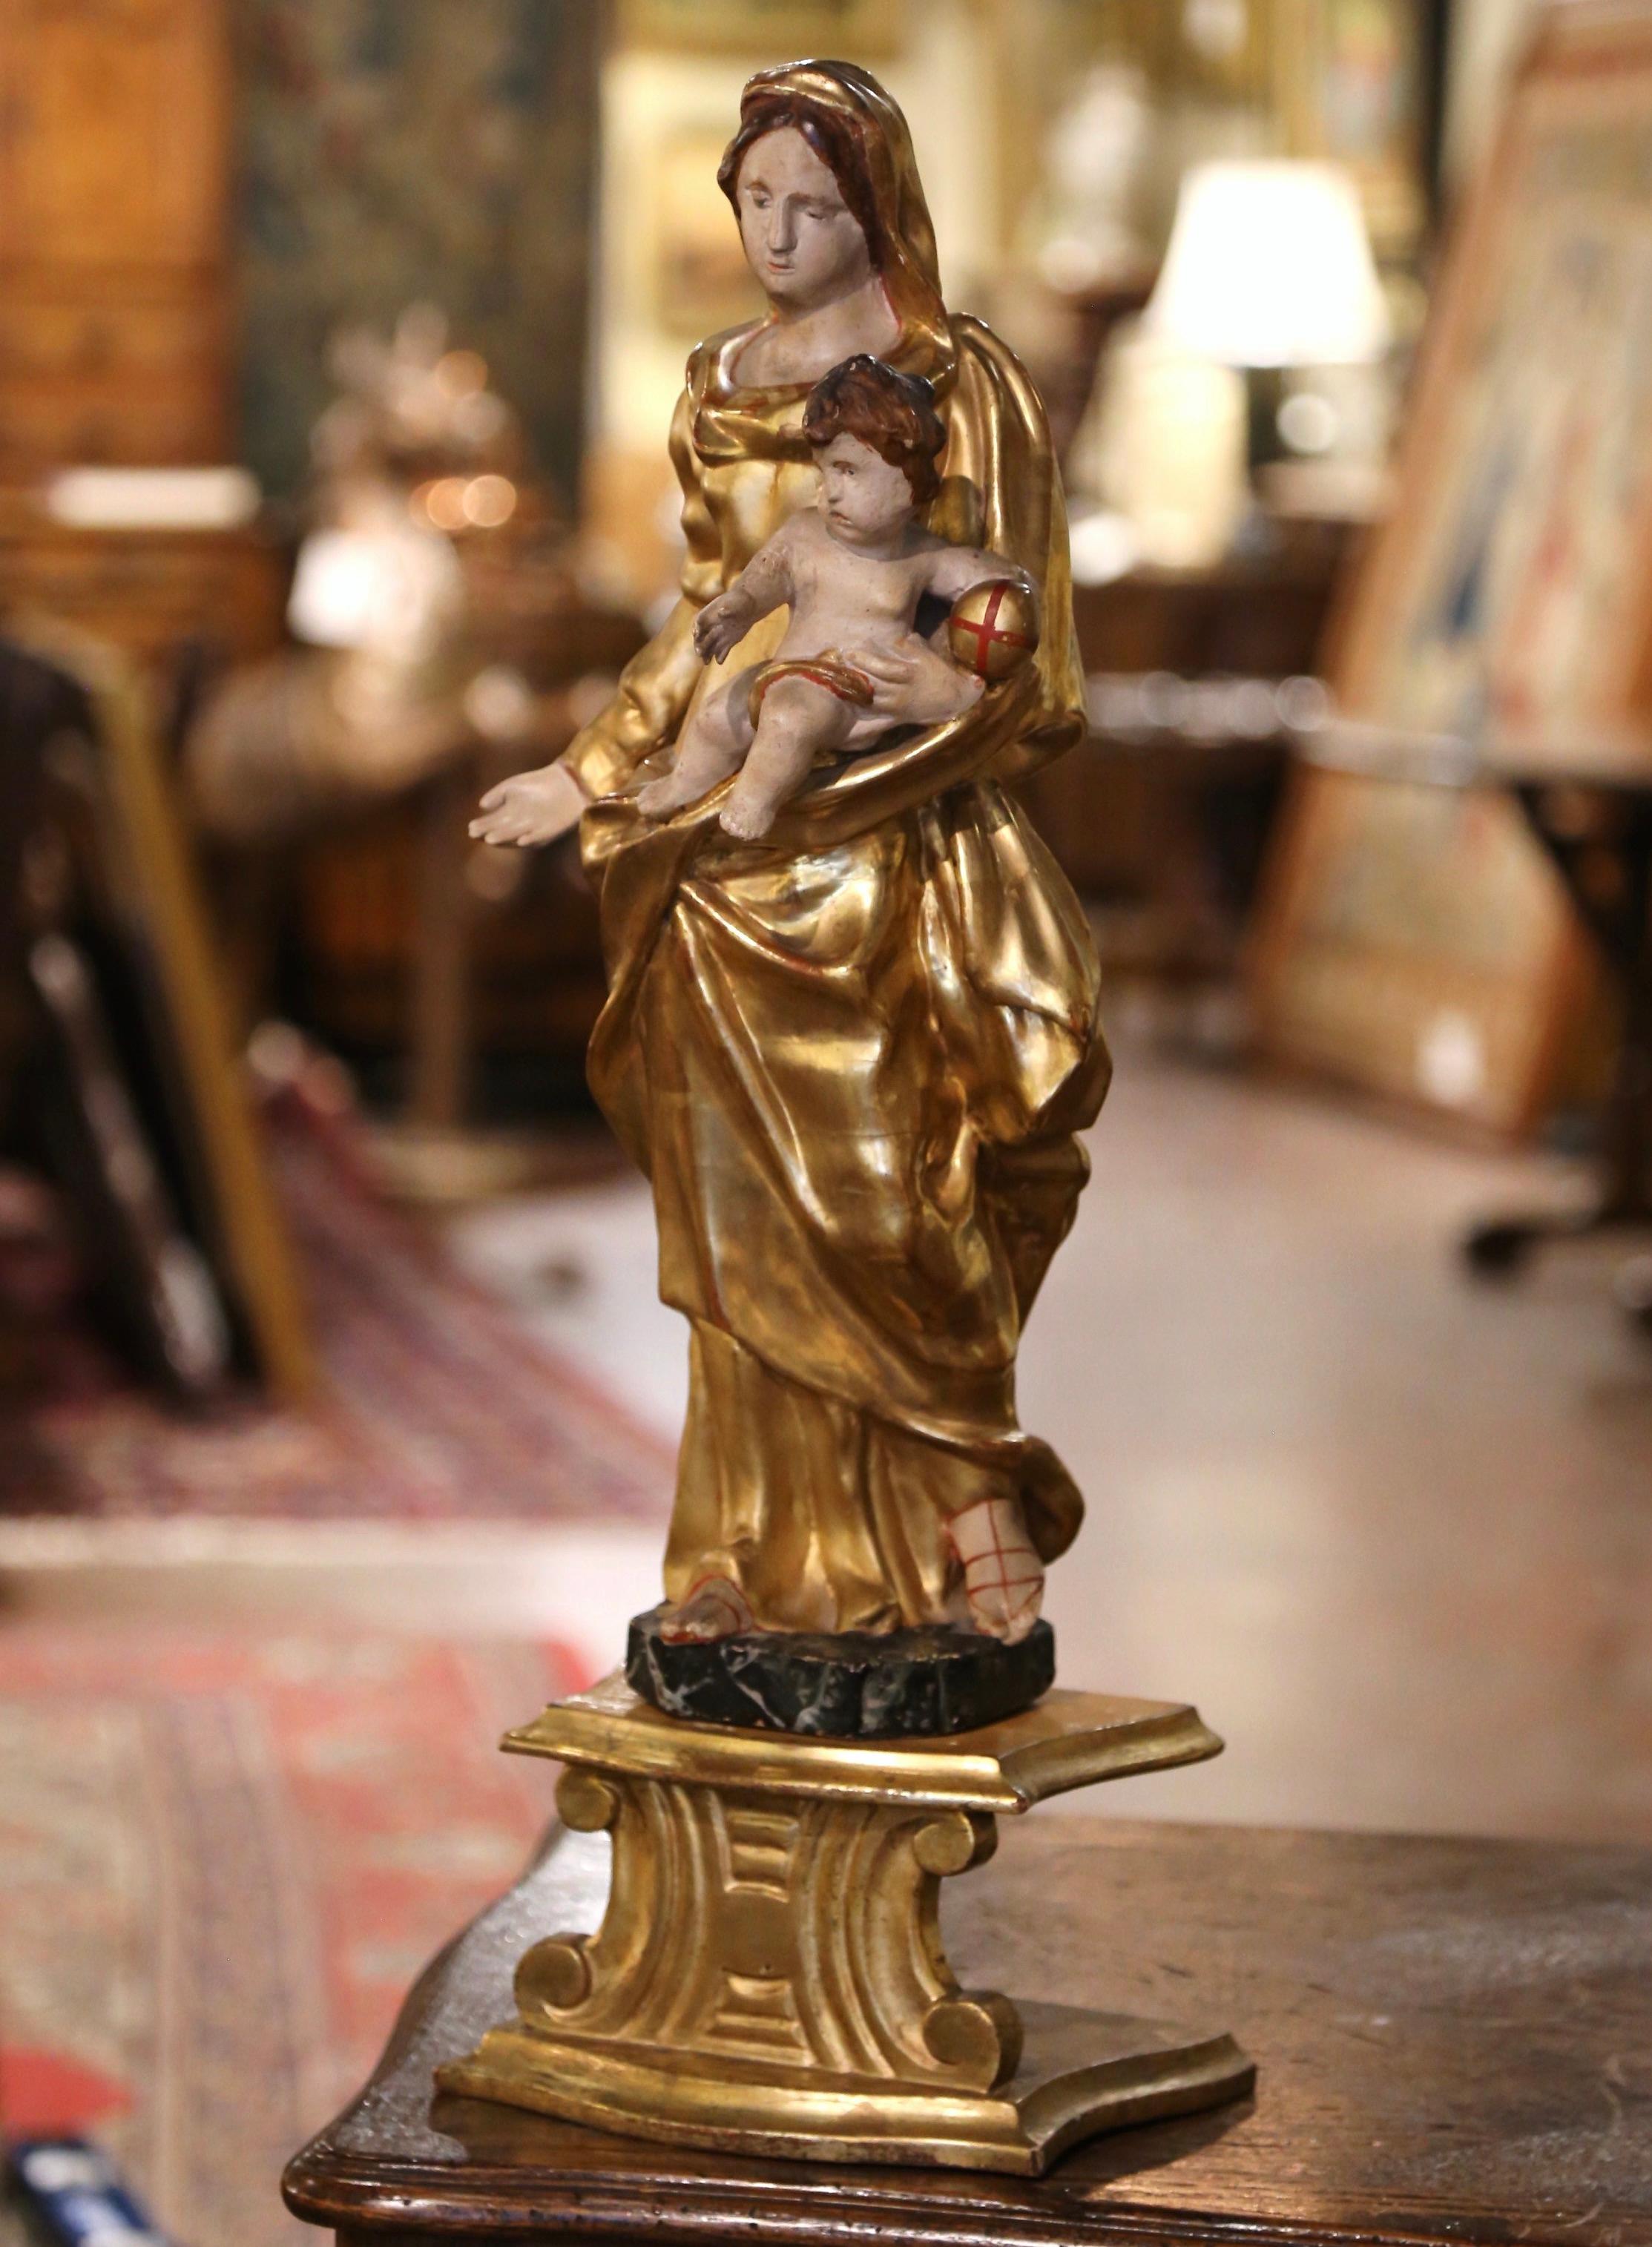 Stellen Sie diese schöne vergoldete Statue mit Sockel in ein Wohn- oder Schlafzimmer. Diese elegante zweiteilige antike Skulptur wurde um 1780 in einer Kapelle in Südfrankreich gefunden und stellt die Jungfrau Maria und ihren Sohn dar. Die